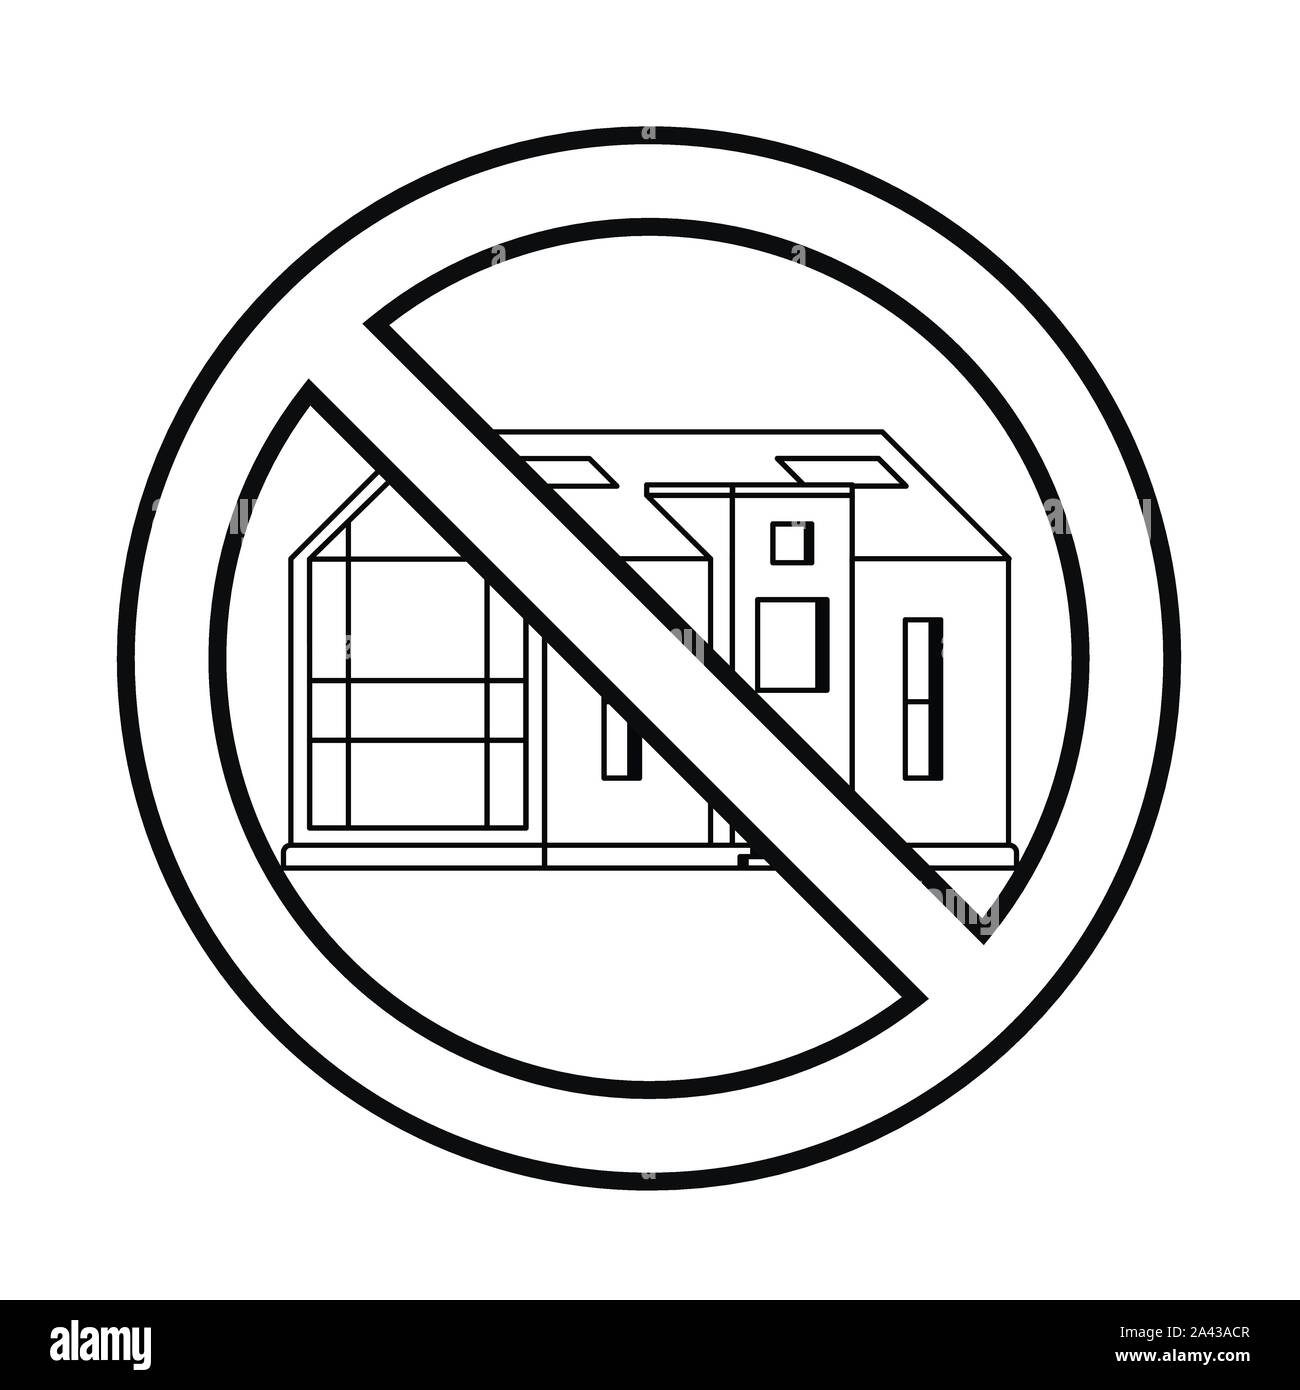 Maison moderne en signe d'interdiction sur un fond blanc dessiné dans un style d'art de la ligne Illustration de Vecteur